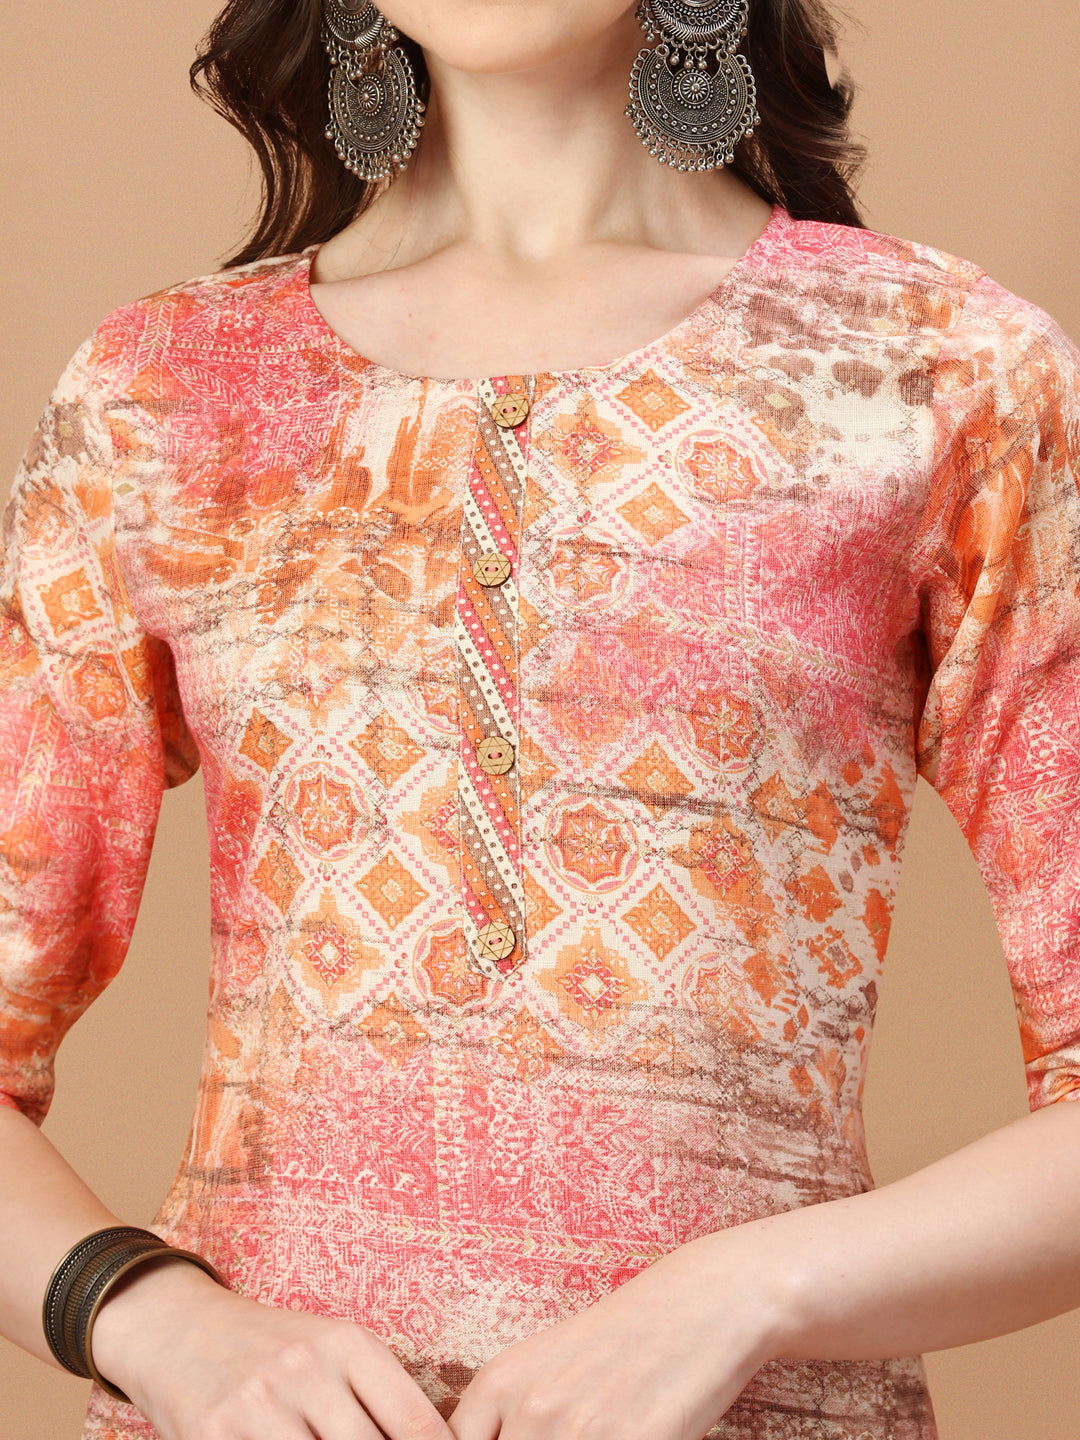 printed Cotton orange & pink Kurta Pant & dupatta set